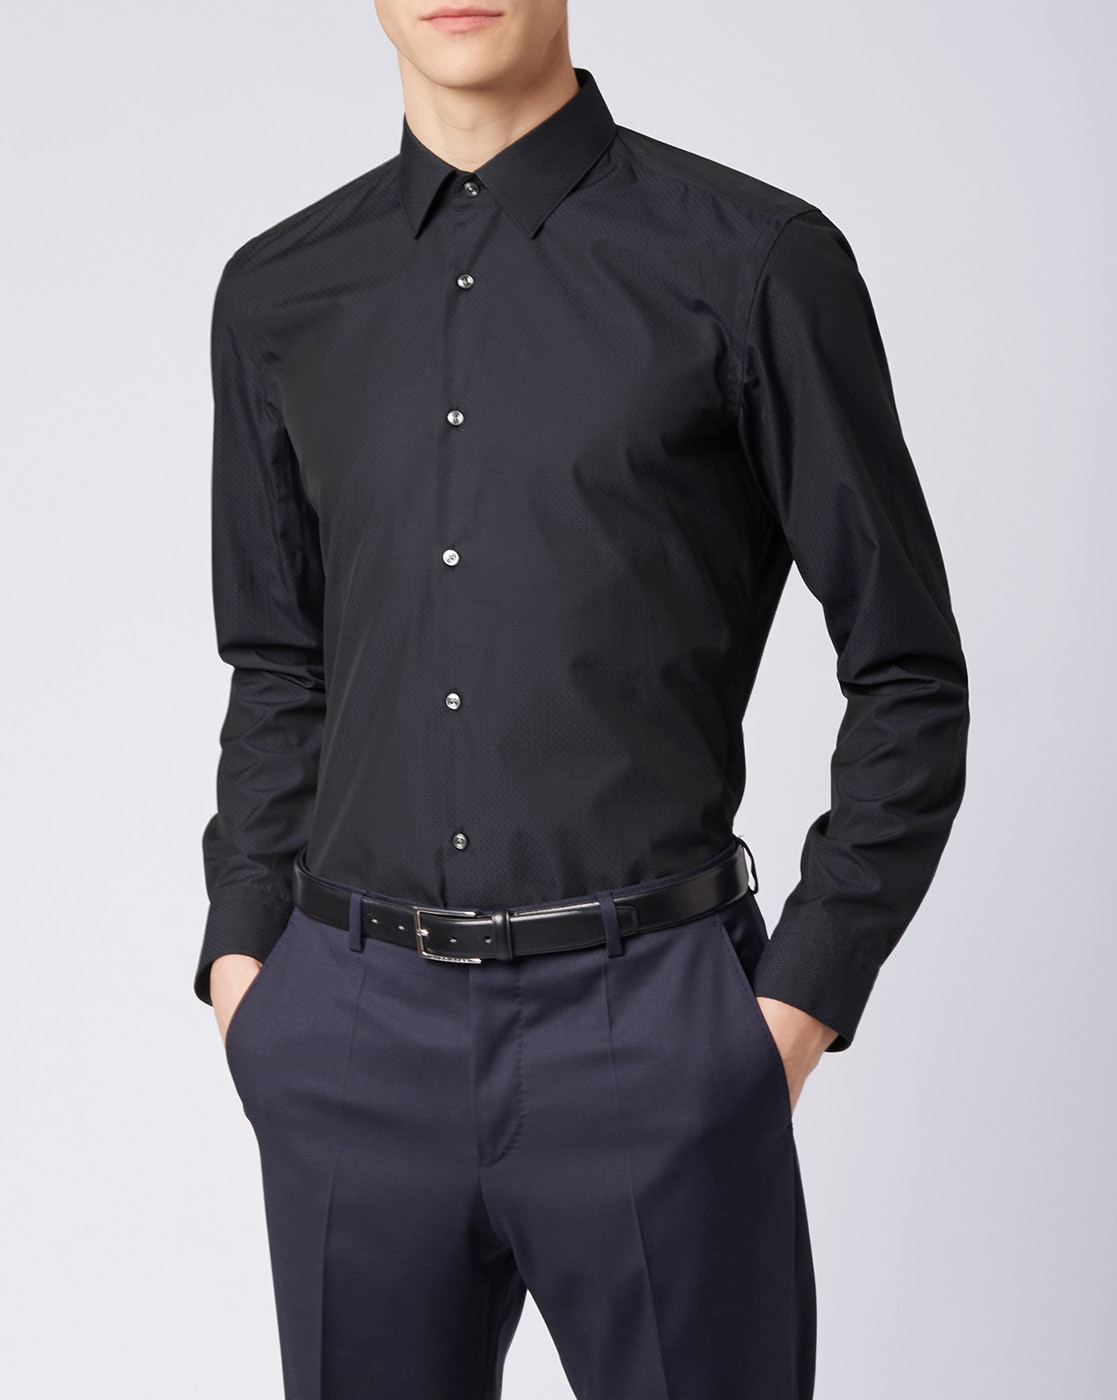 Struikelen actrice Over het algemeen Buy Black Shirts for Men by HUGO BOSS Online | Ajio.com